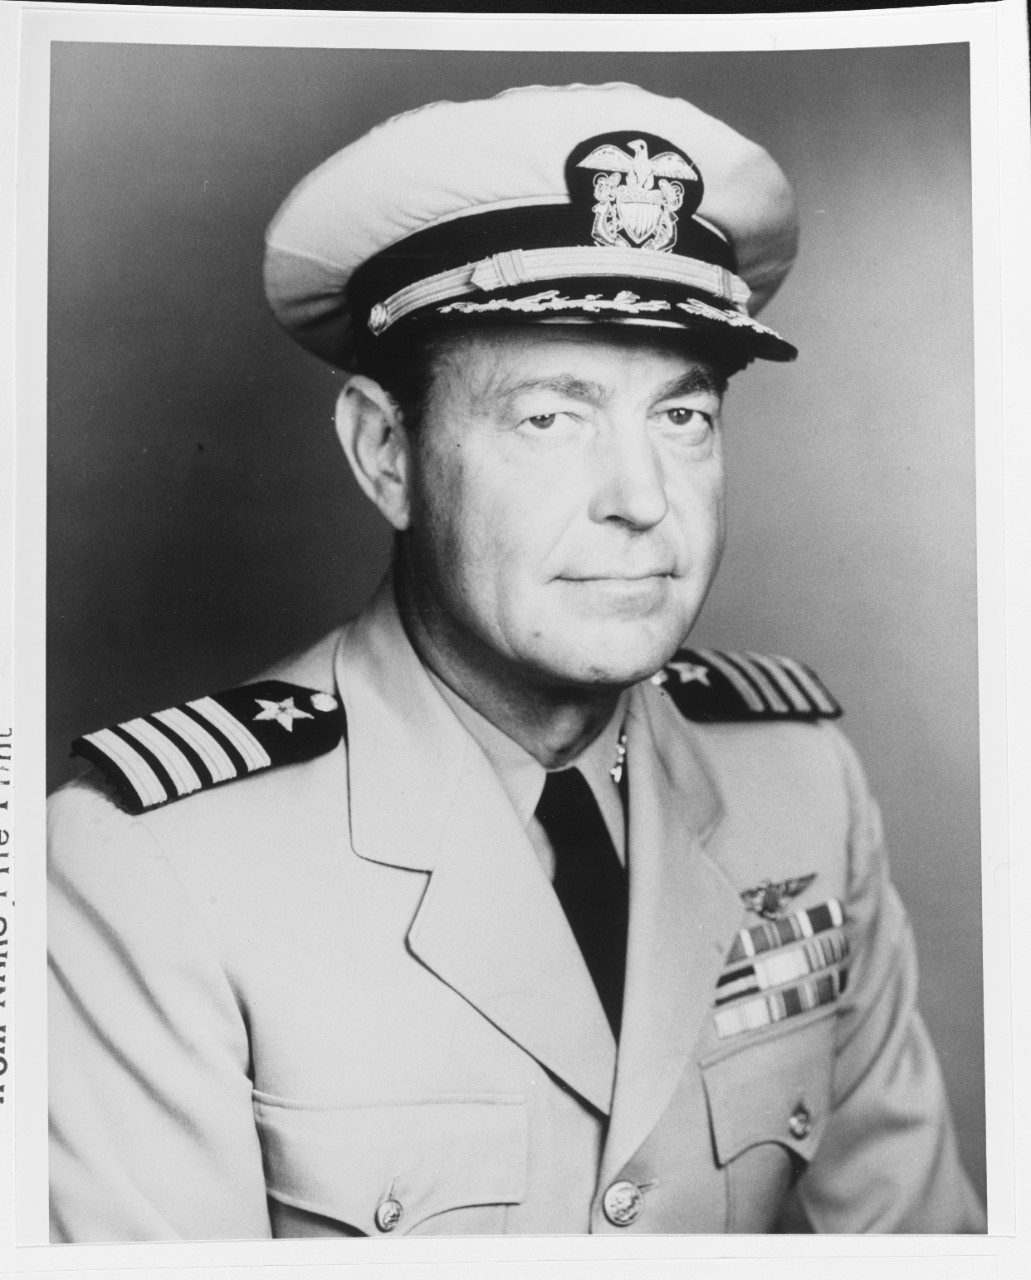 Captain Fredrick M. Trapnell, USN